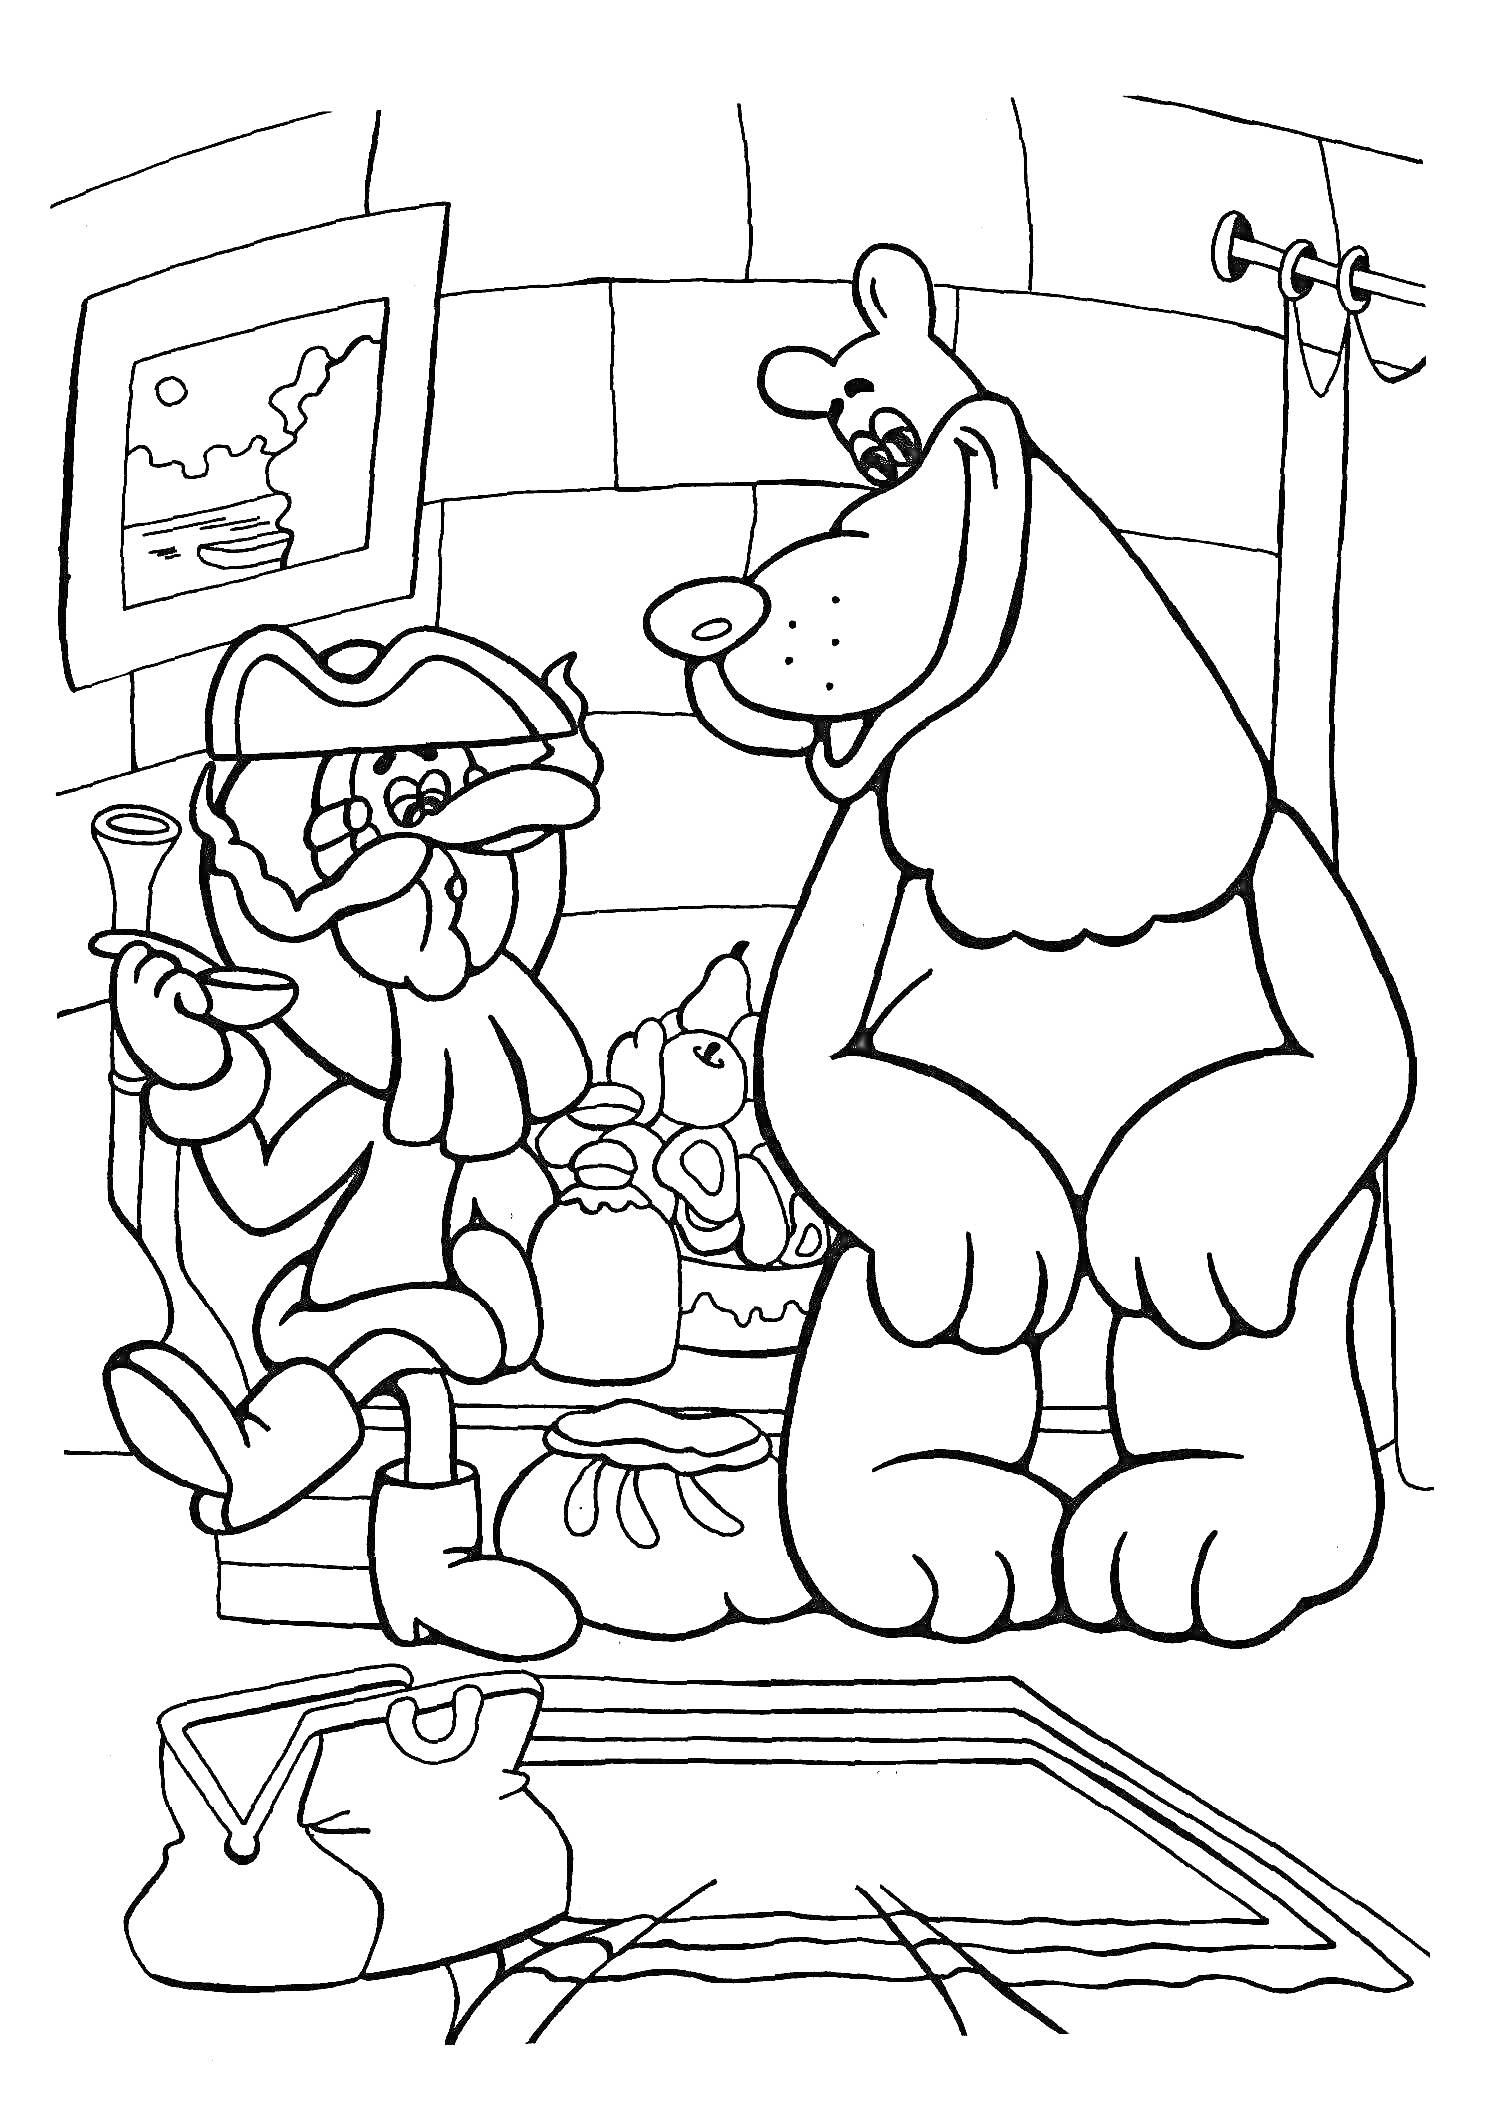 Барон Мюнхгаузен и медведь в комнате с восточными коврами, сундучком и картиной на стене